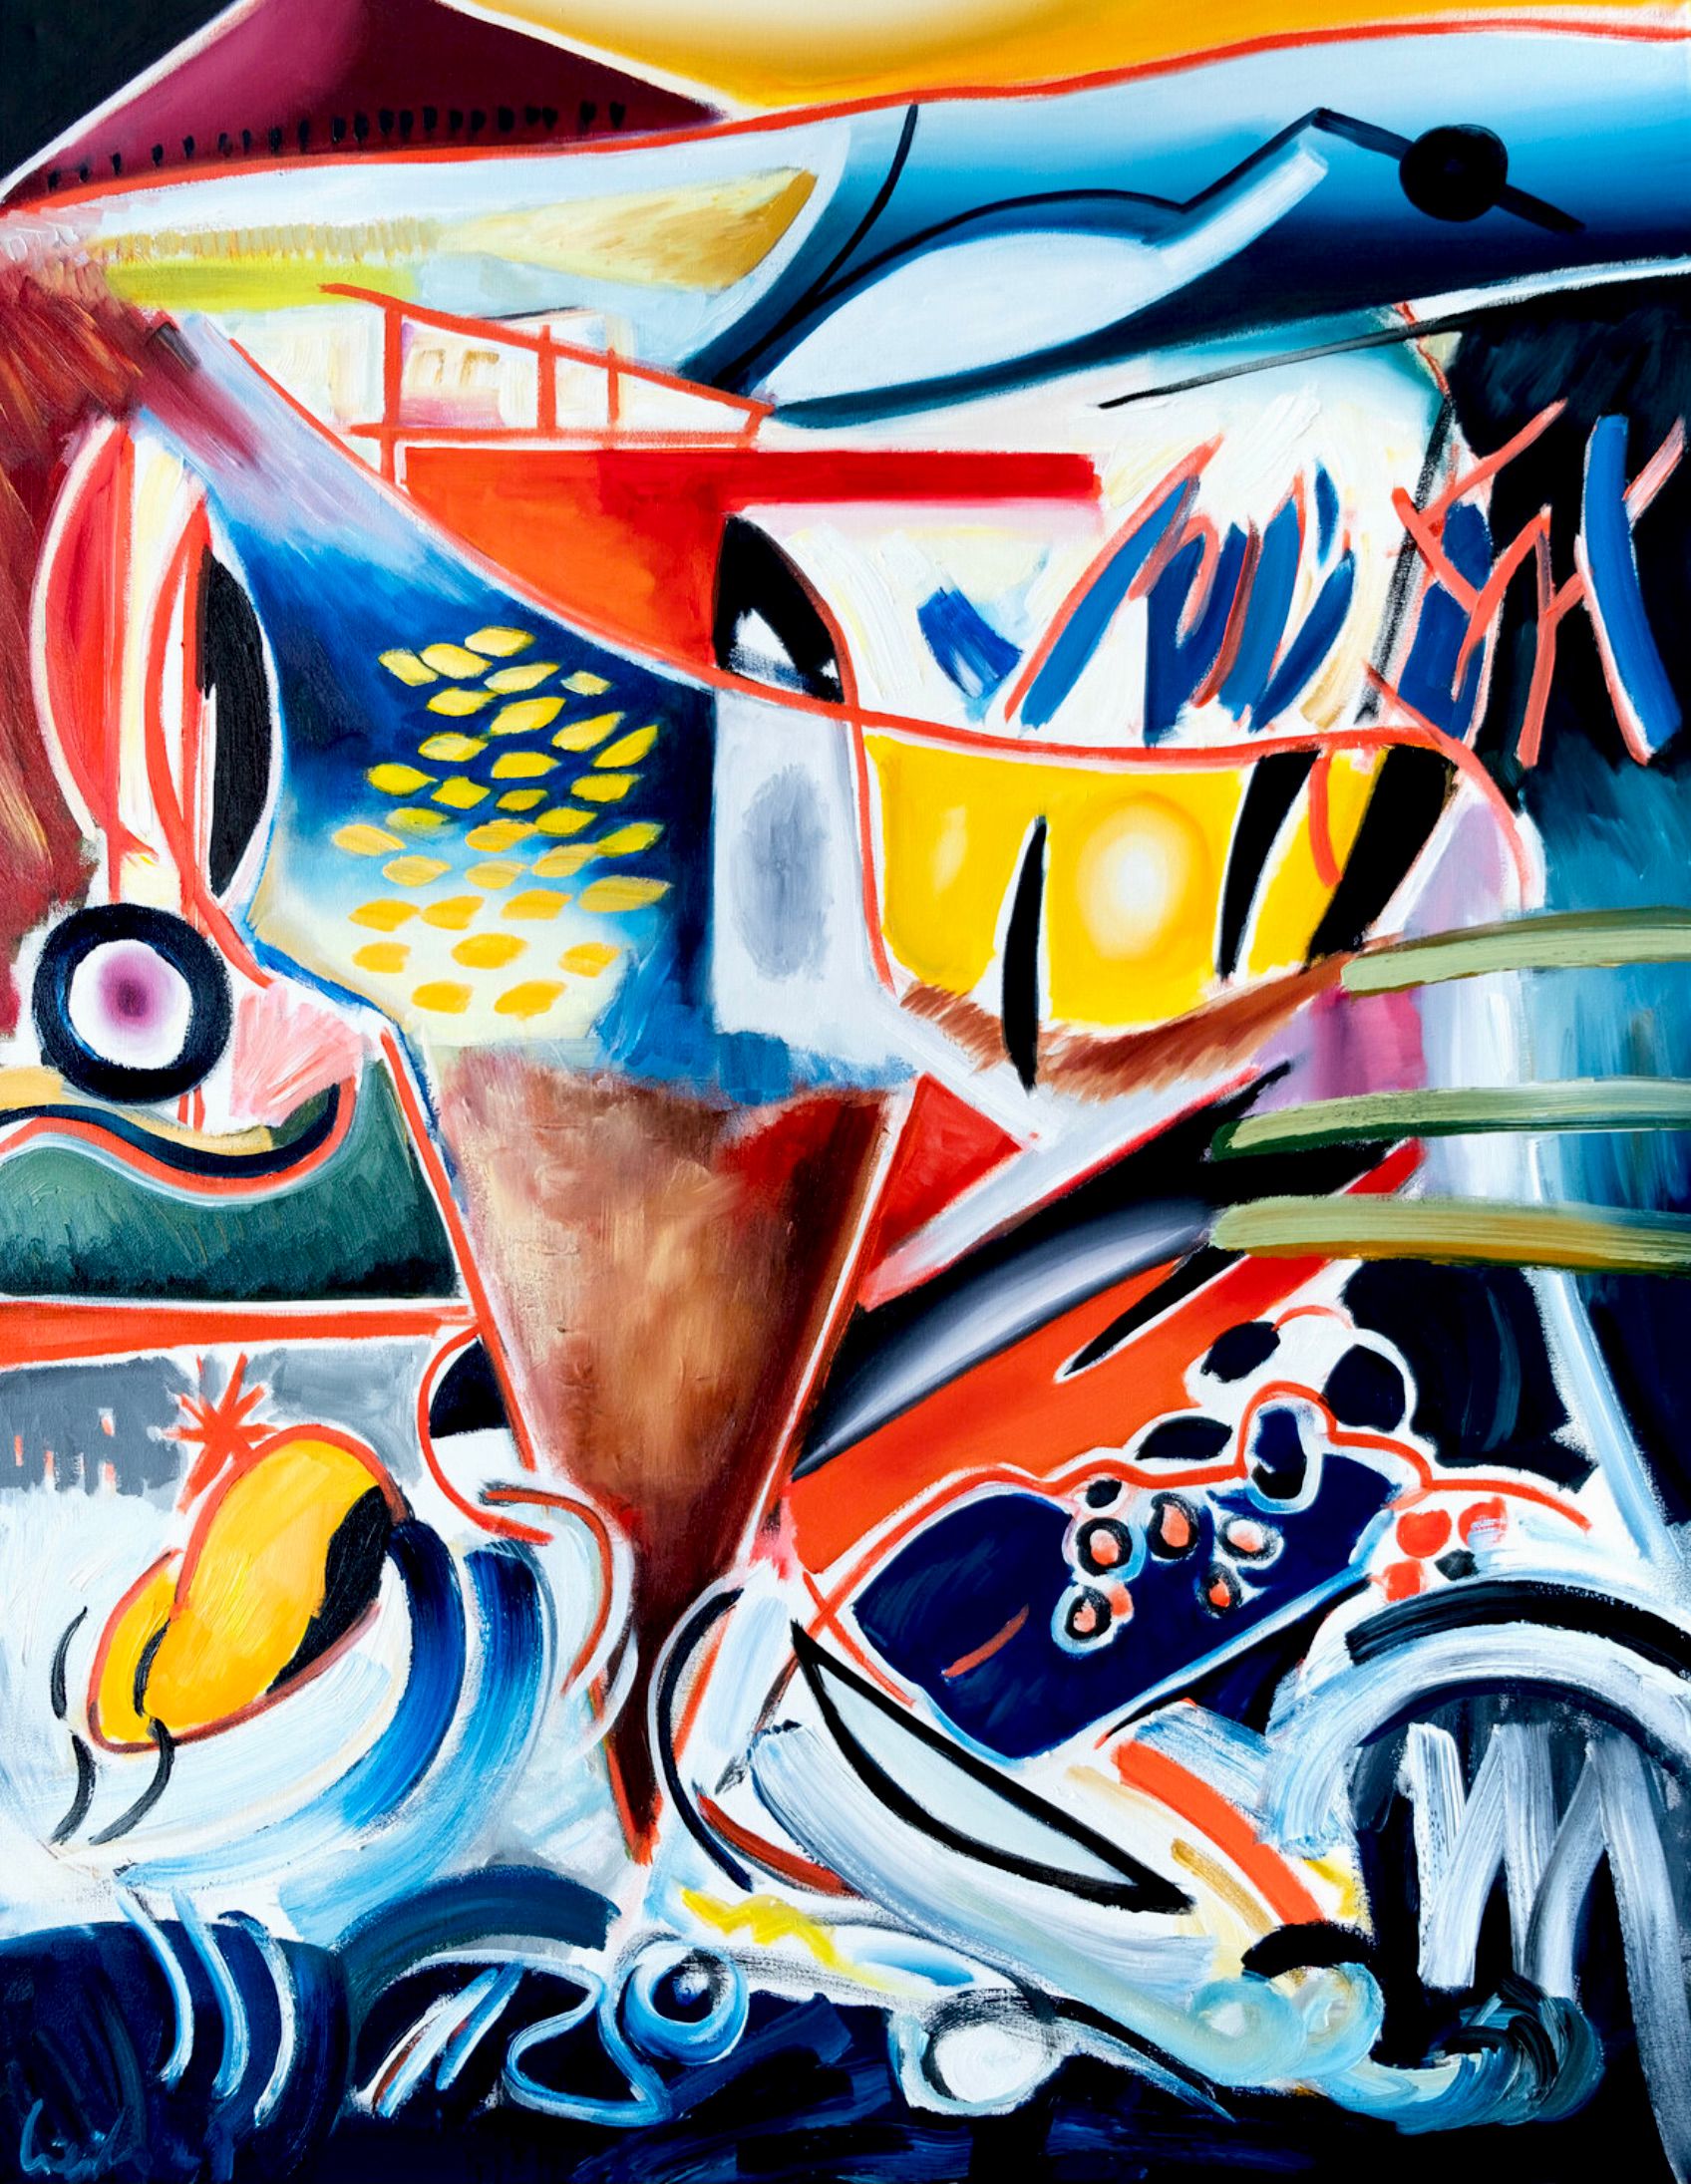 MECESLA Maciej Cieśla, "Punter Ala Italia en formas abstractas", Pintura abstracta de colores sobre lienzo